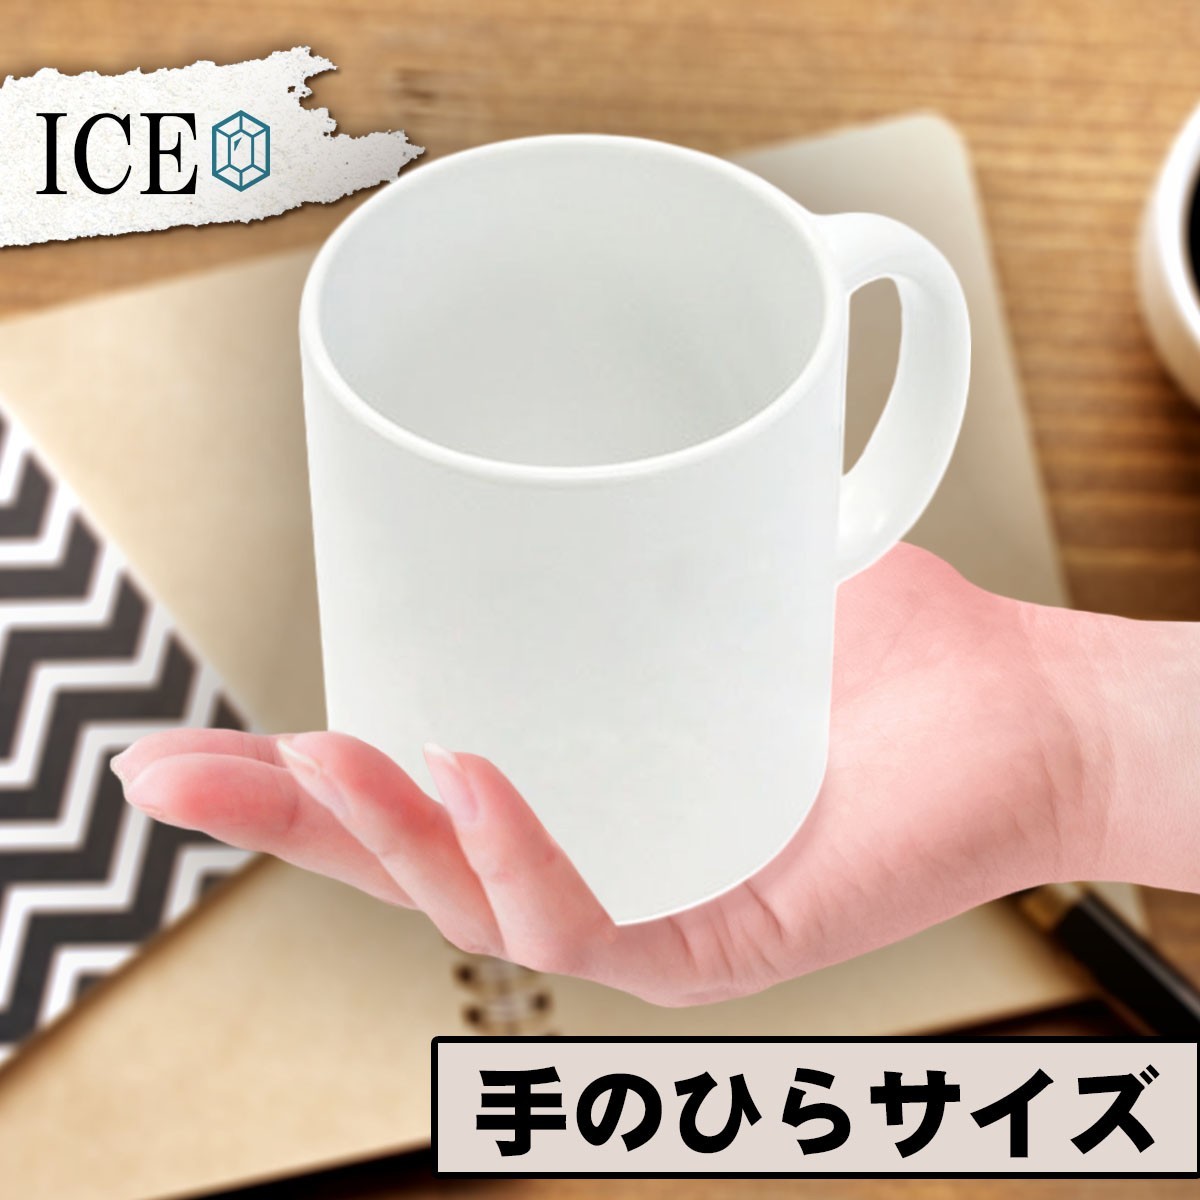 仲良し ショウリョウバッタ おもしろ マグカップ コップ 陶器 可愛い かわいい 白 シンプル かわいい カッコイイ シュール 面白い ジョーク_画像2